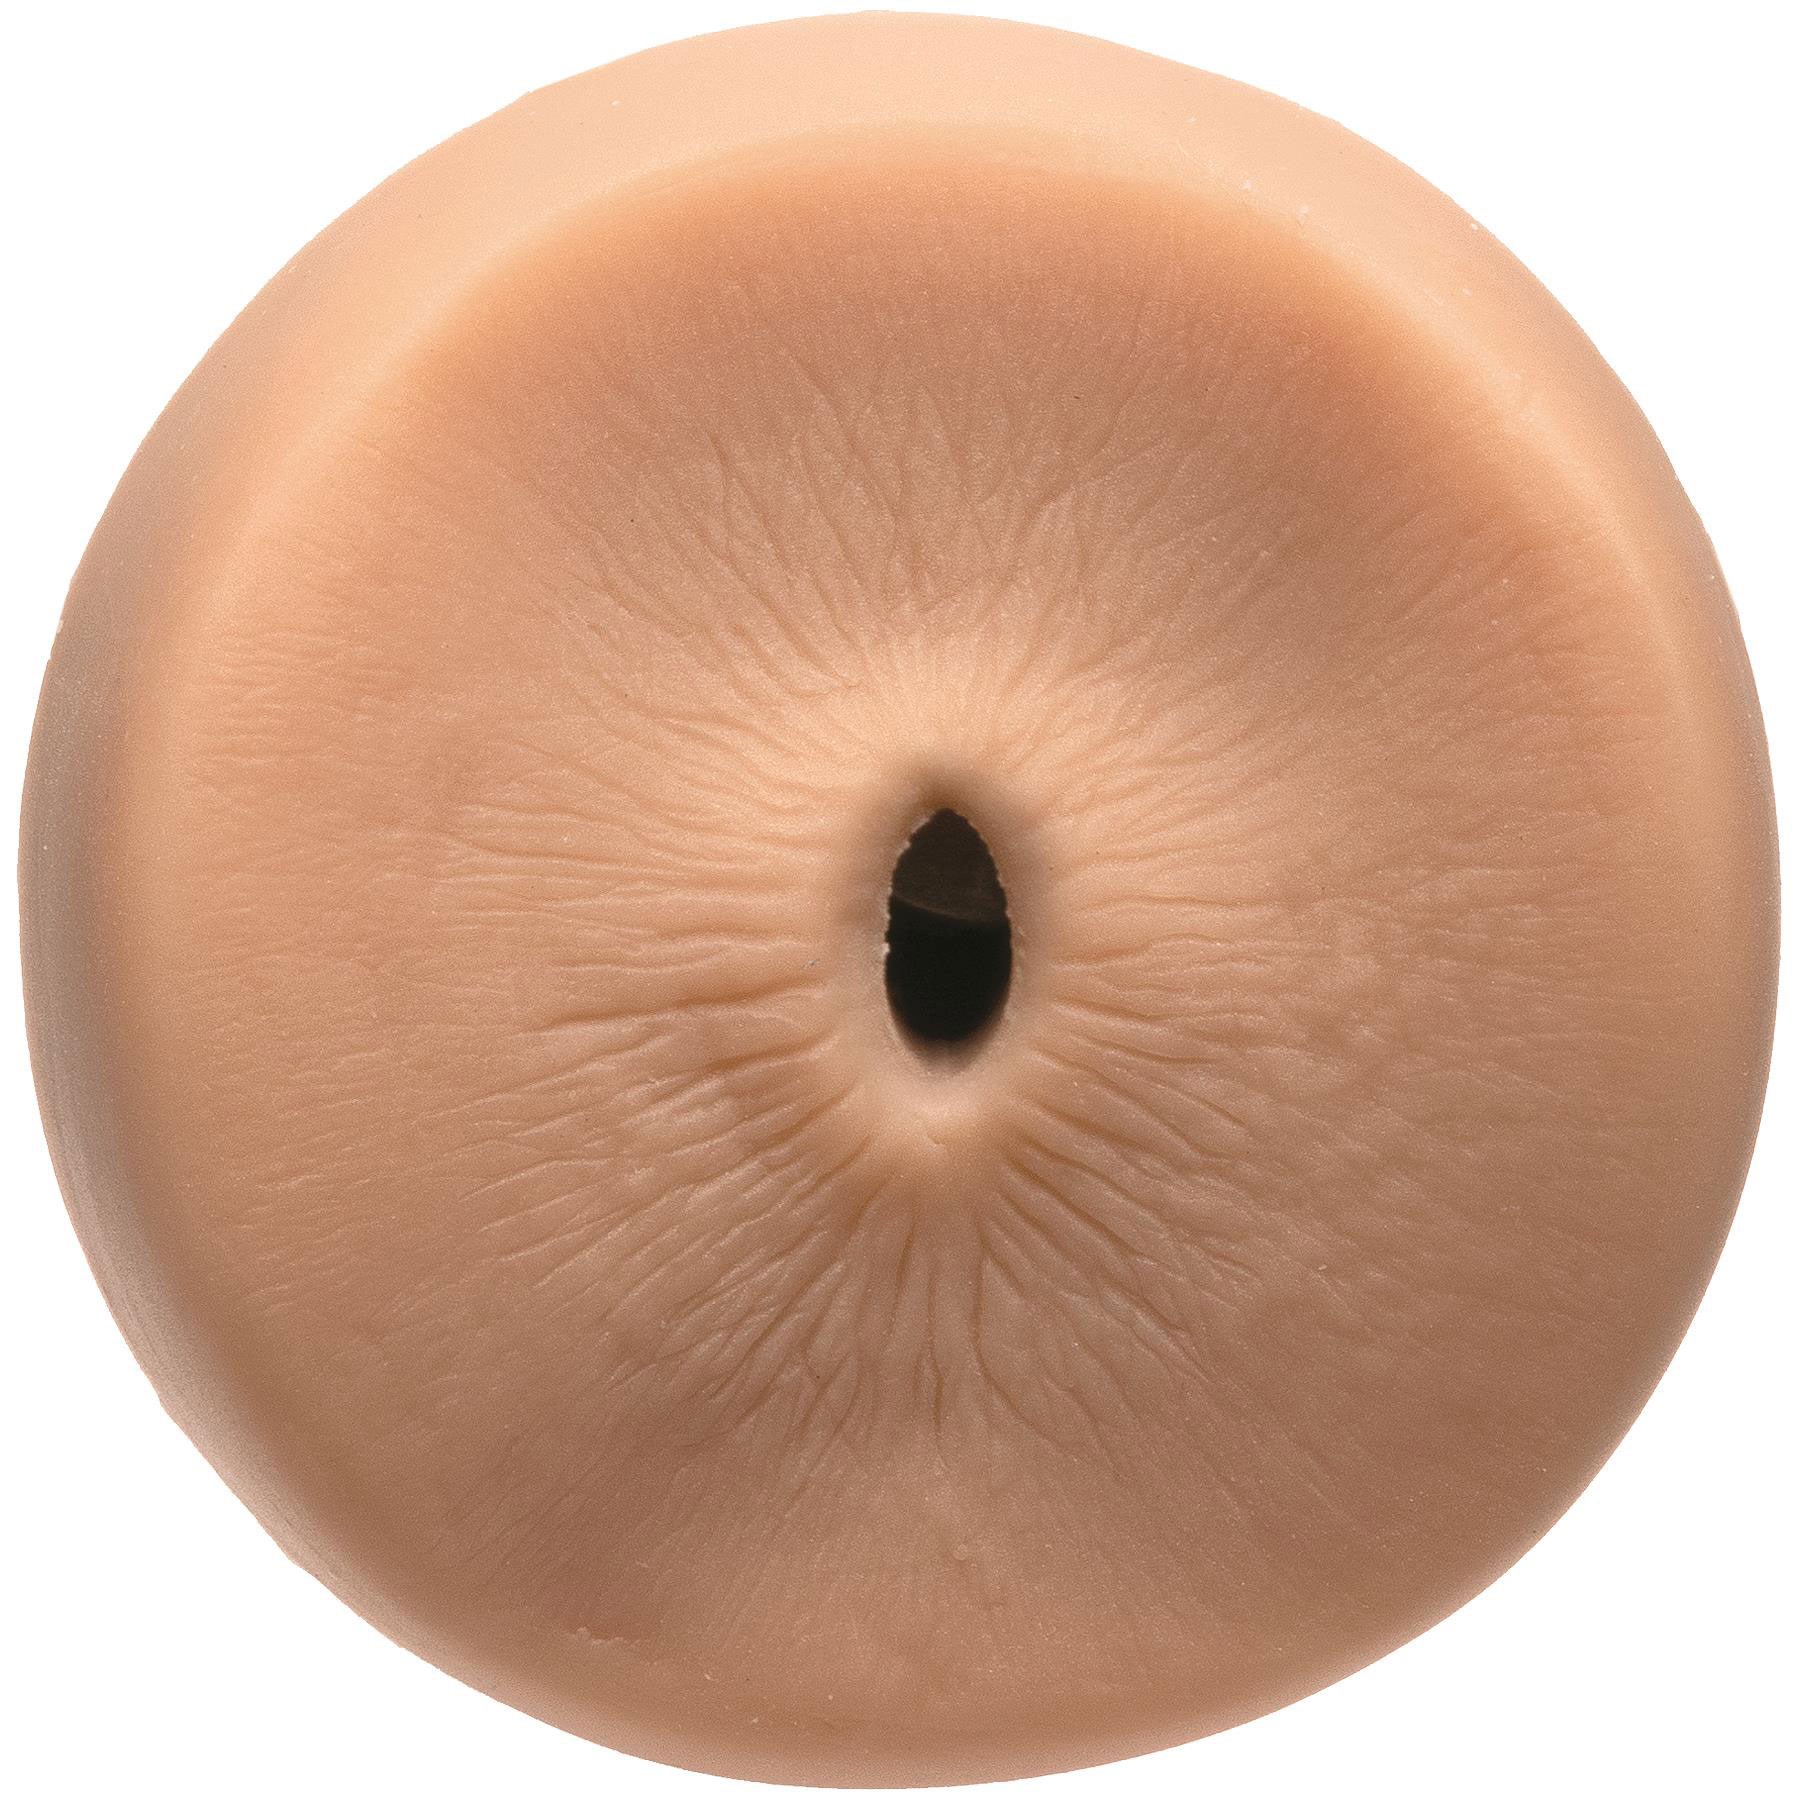 Mansqueeze William Seed Ass Stroker - butt view